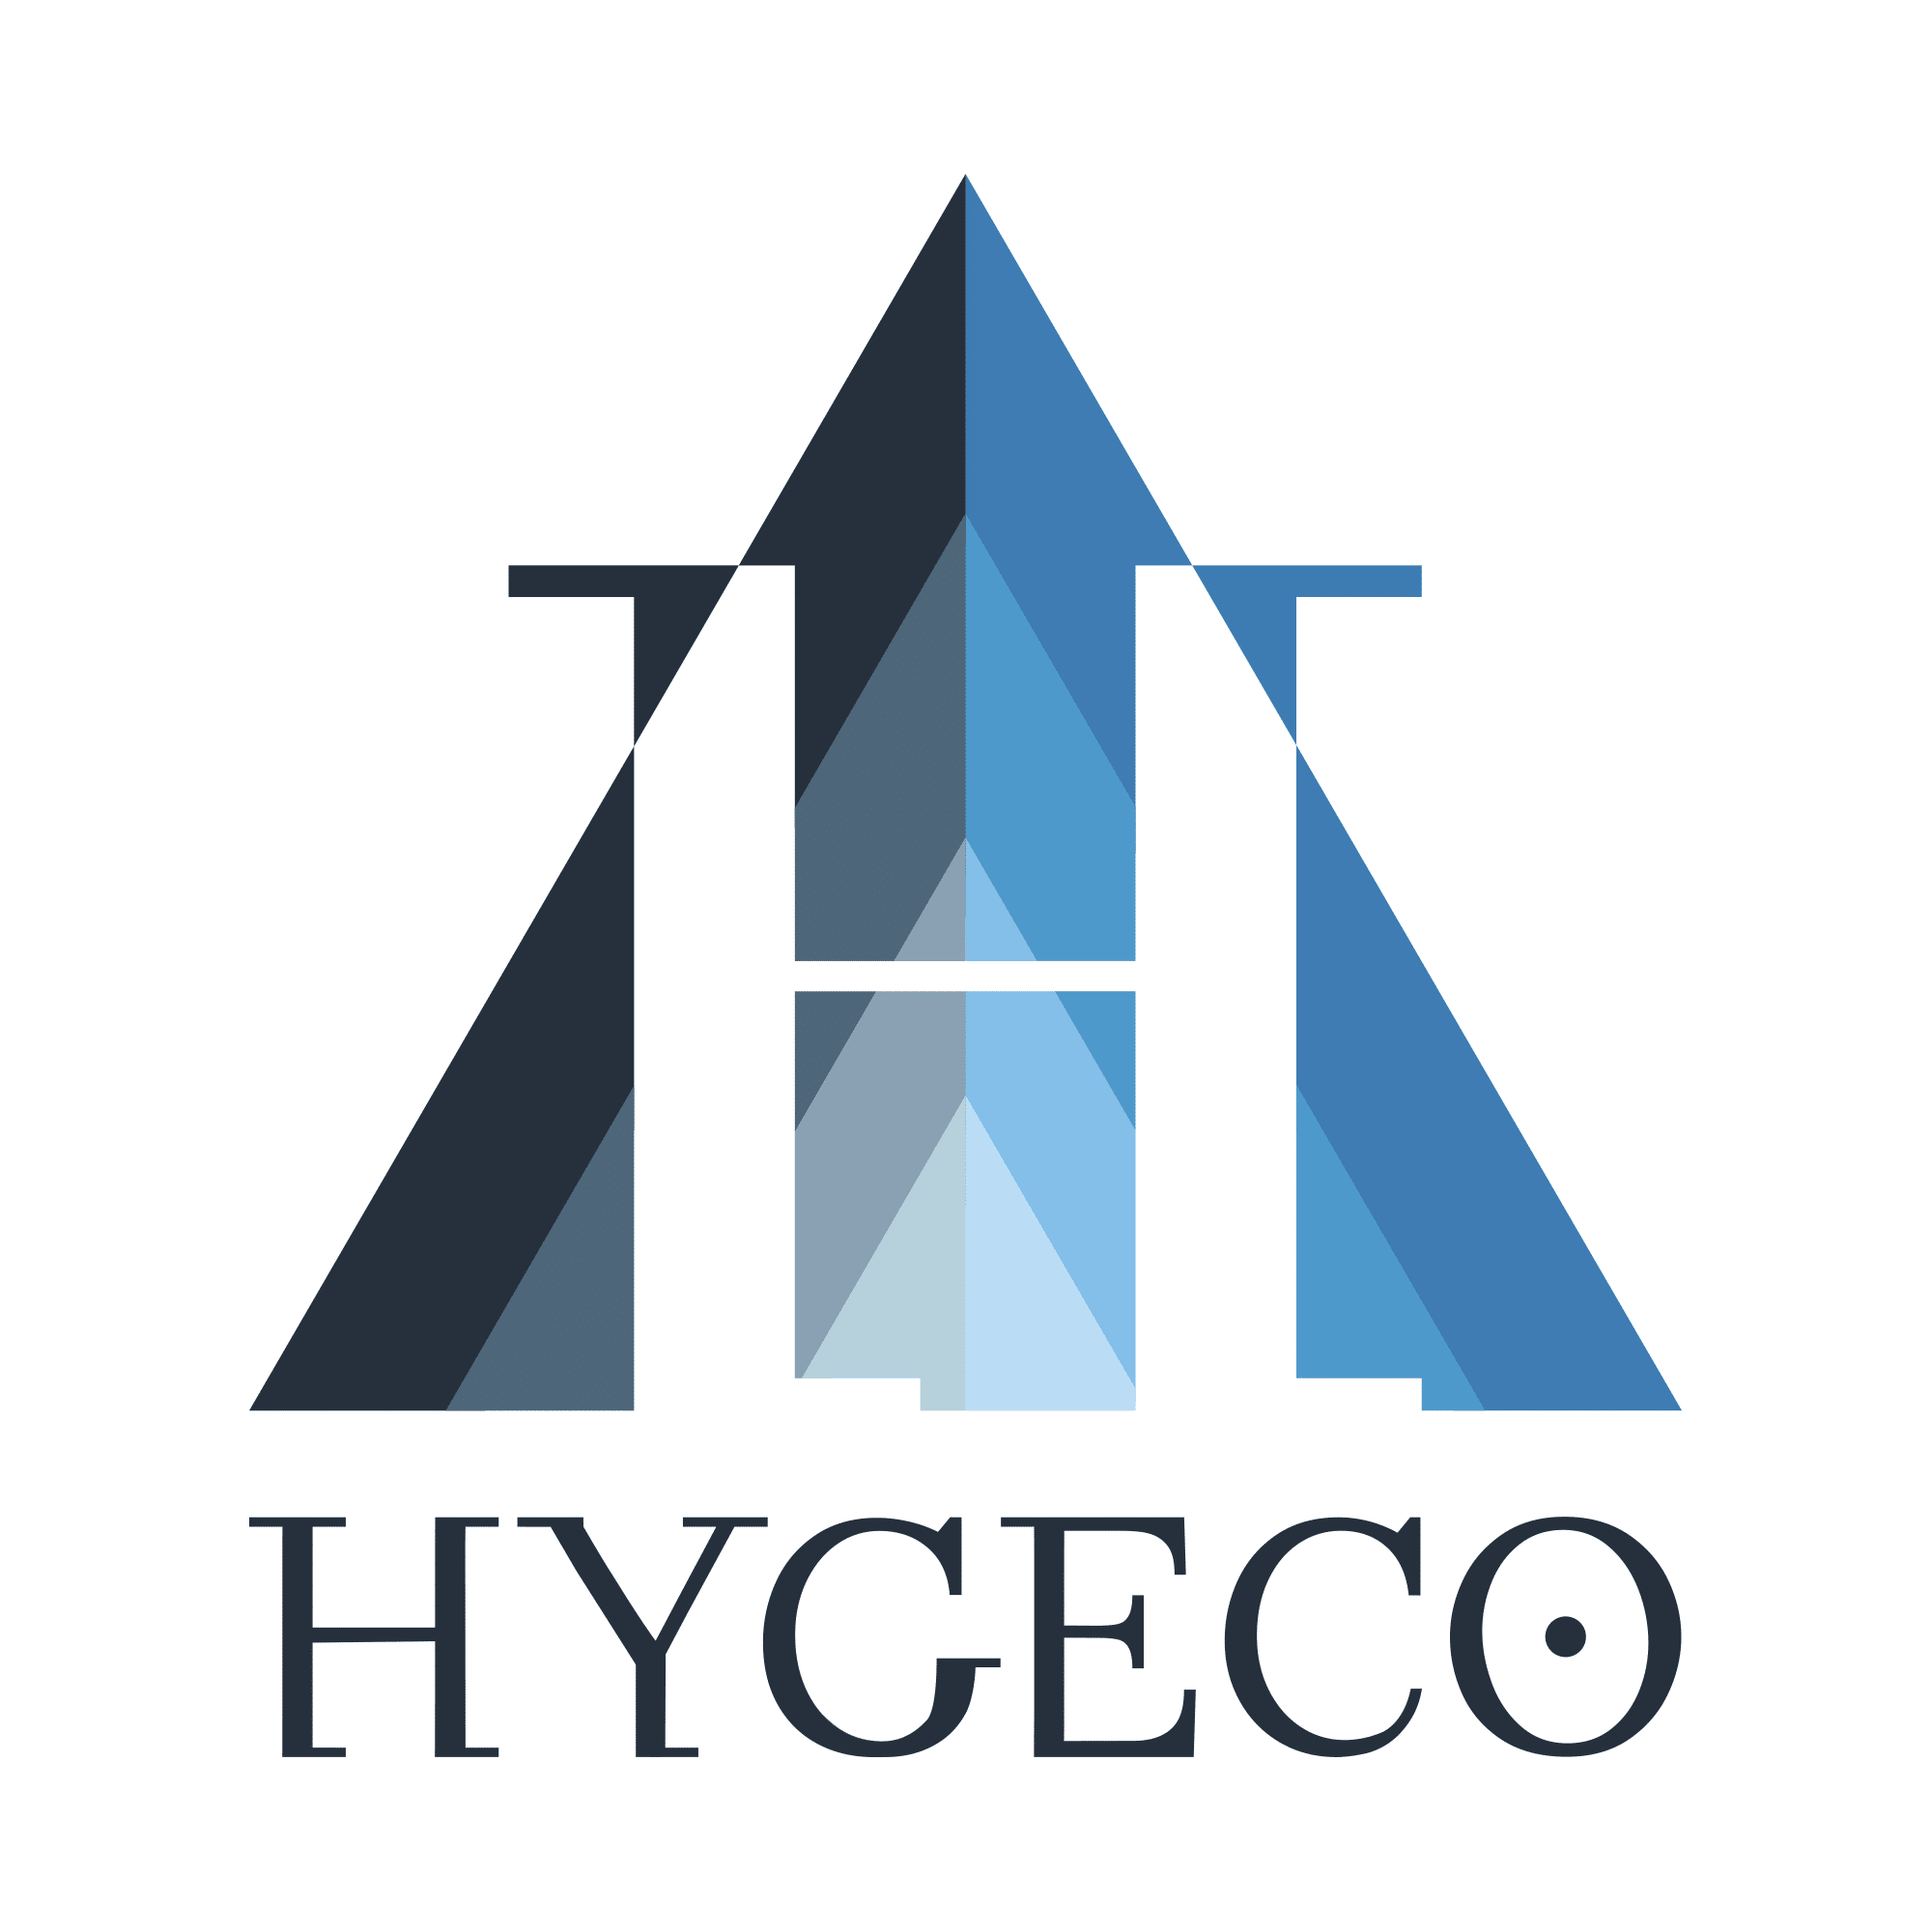 HYGECO